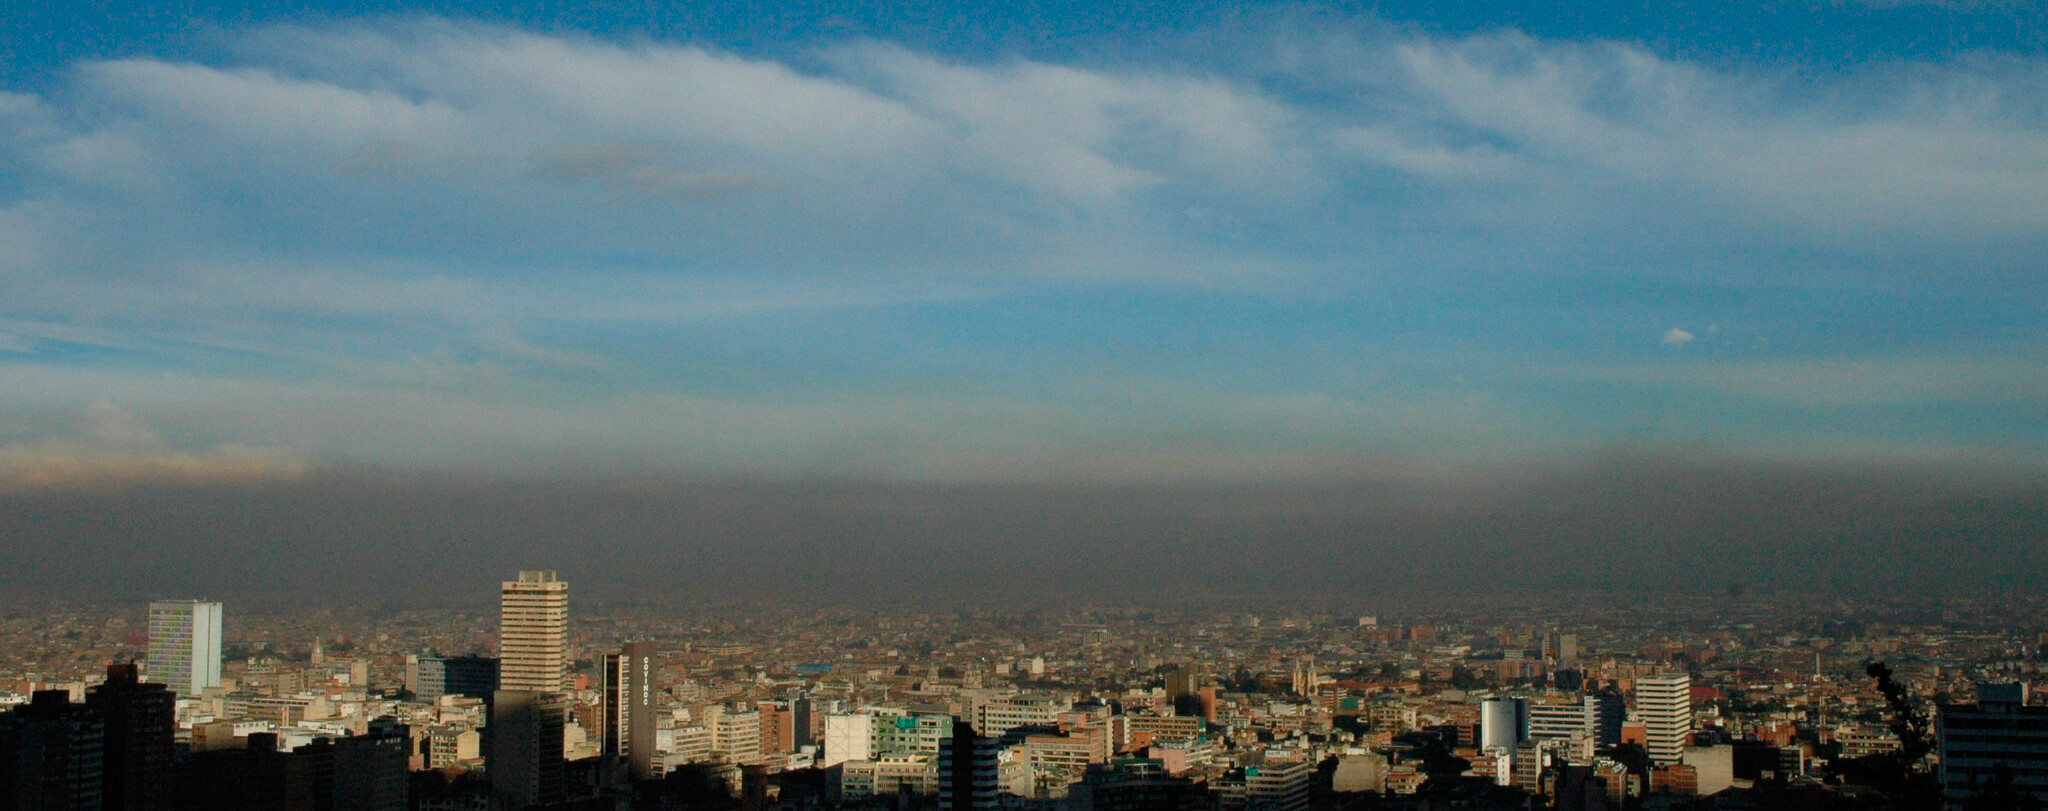 Plan Decenal de Descontaminación del Aire de Bogotá